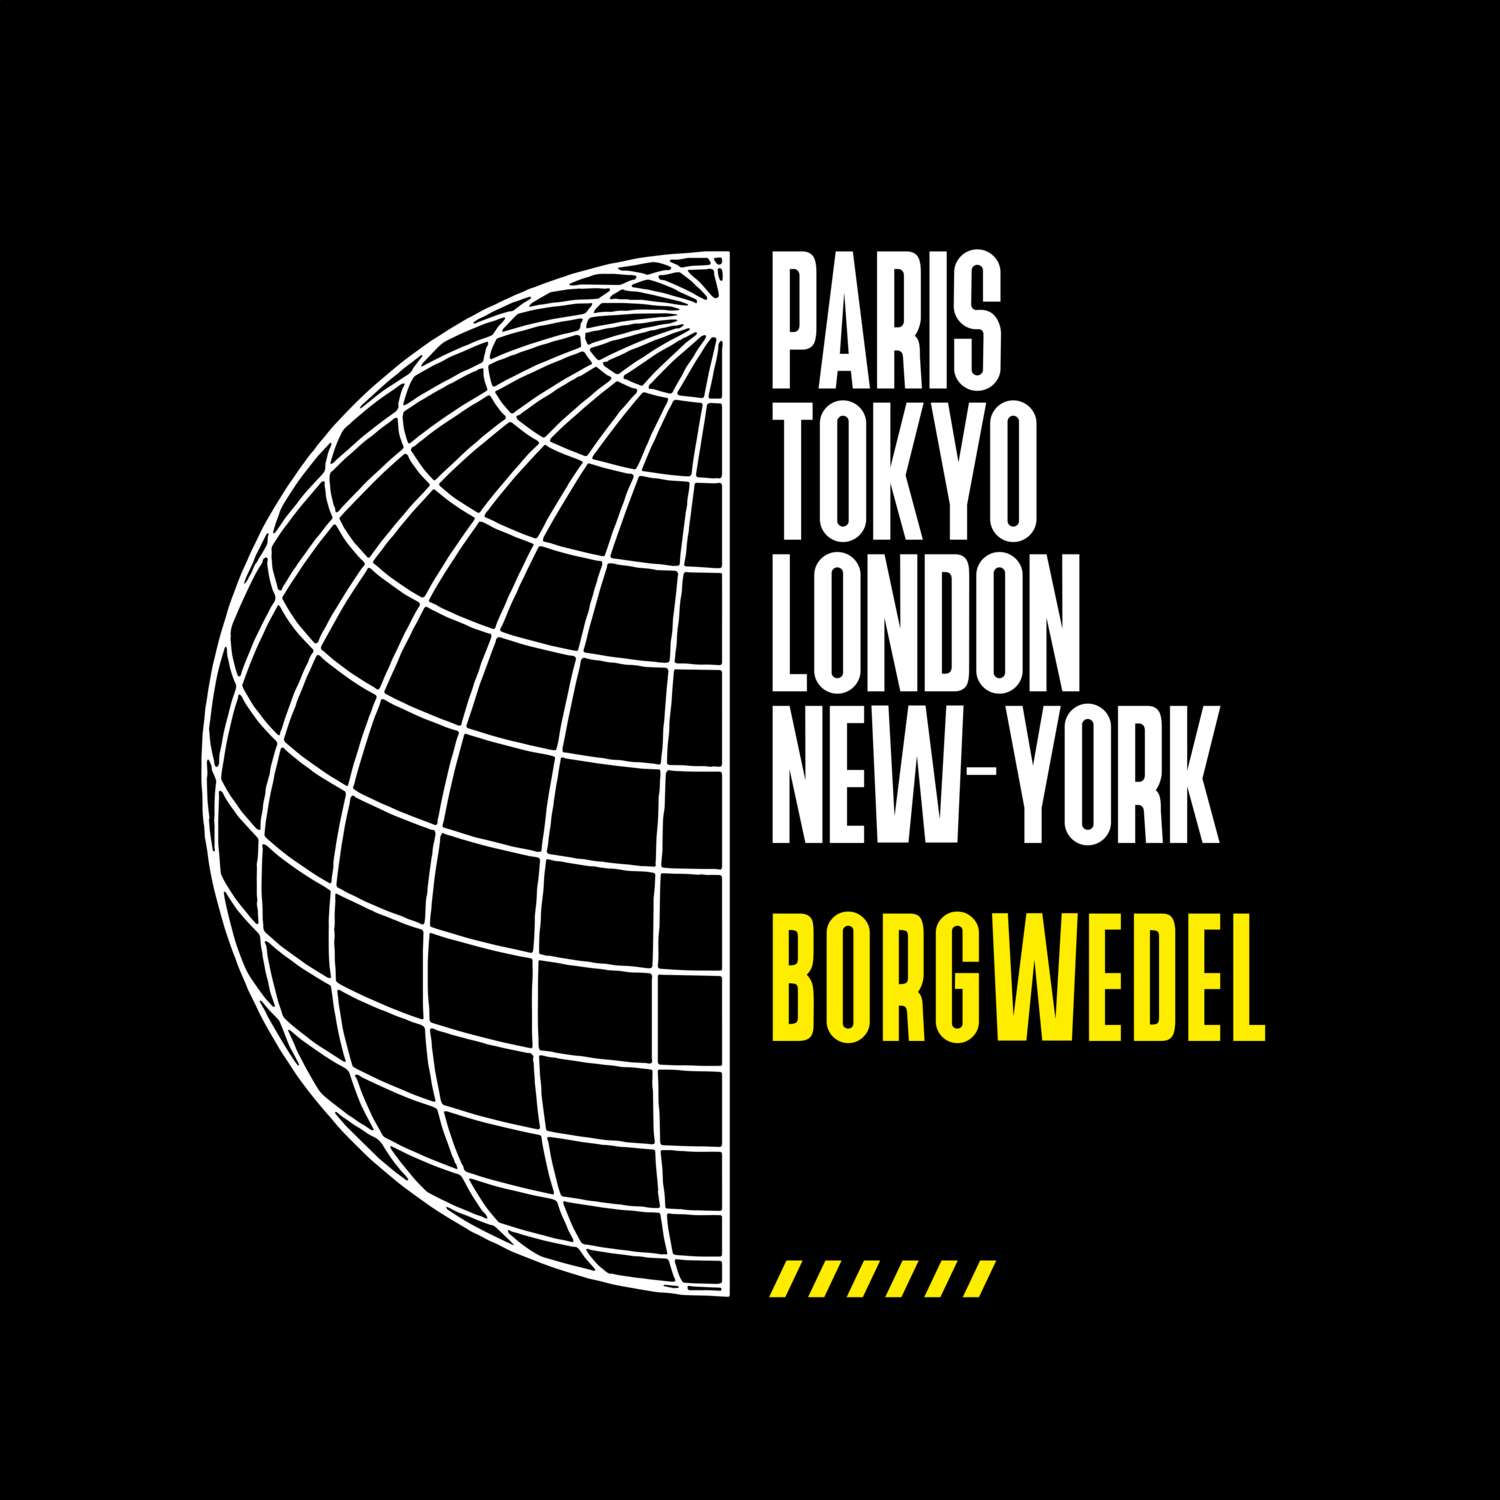 Borgwedel T-Shirt »Paris Tokyo London«